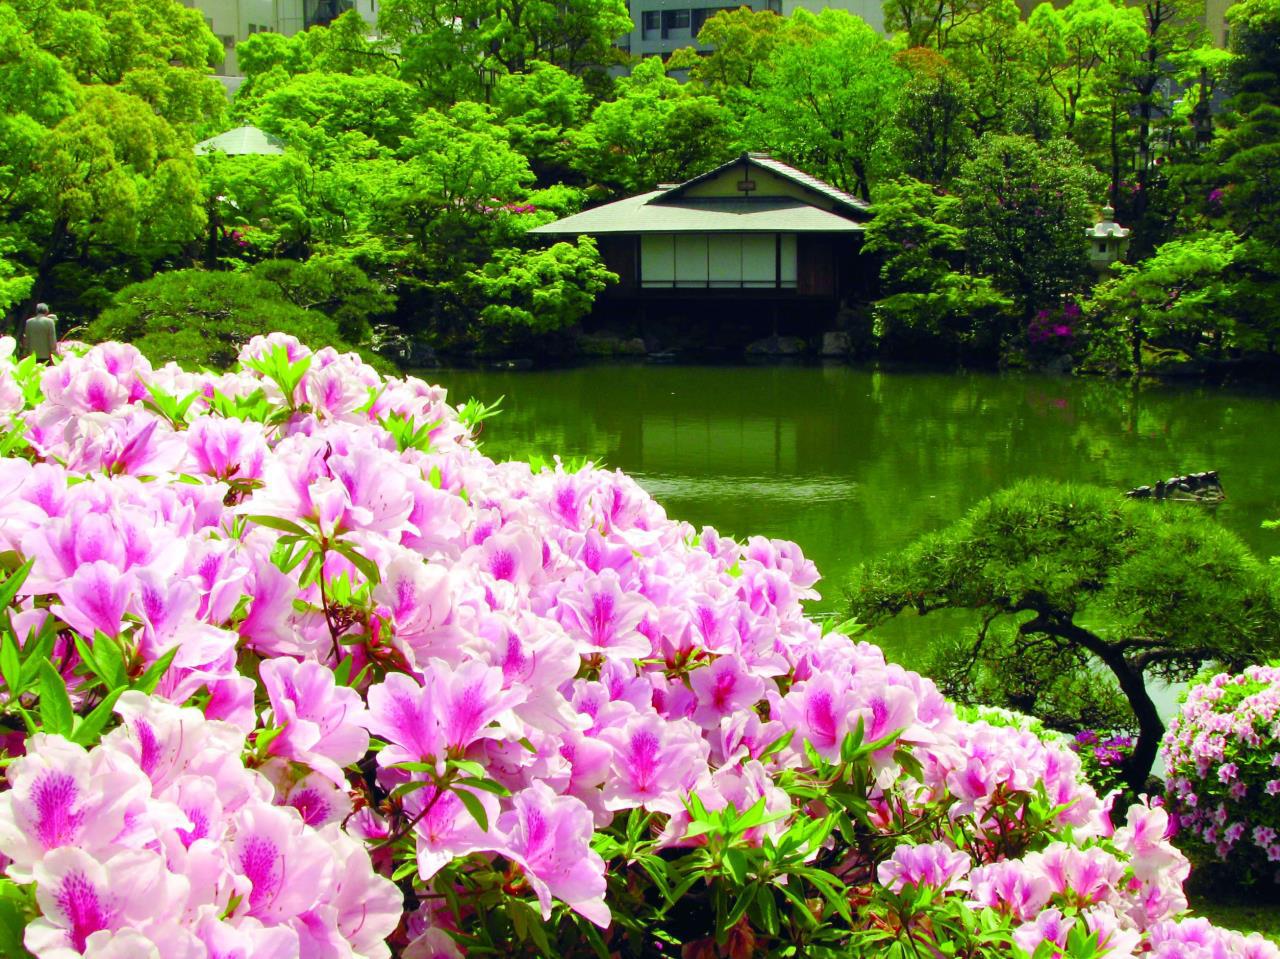 Kobe City Sorakuen Garden